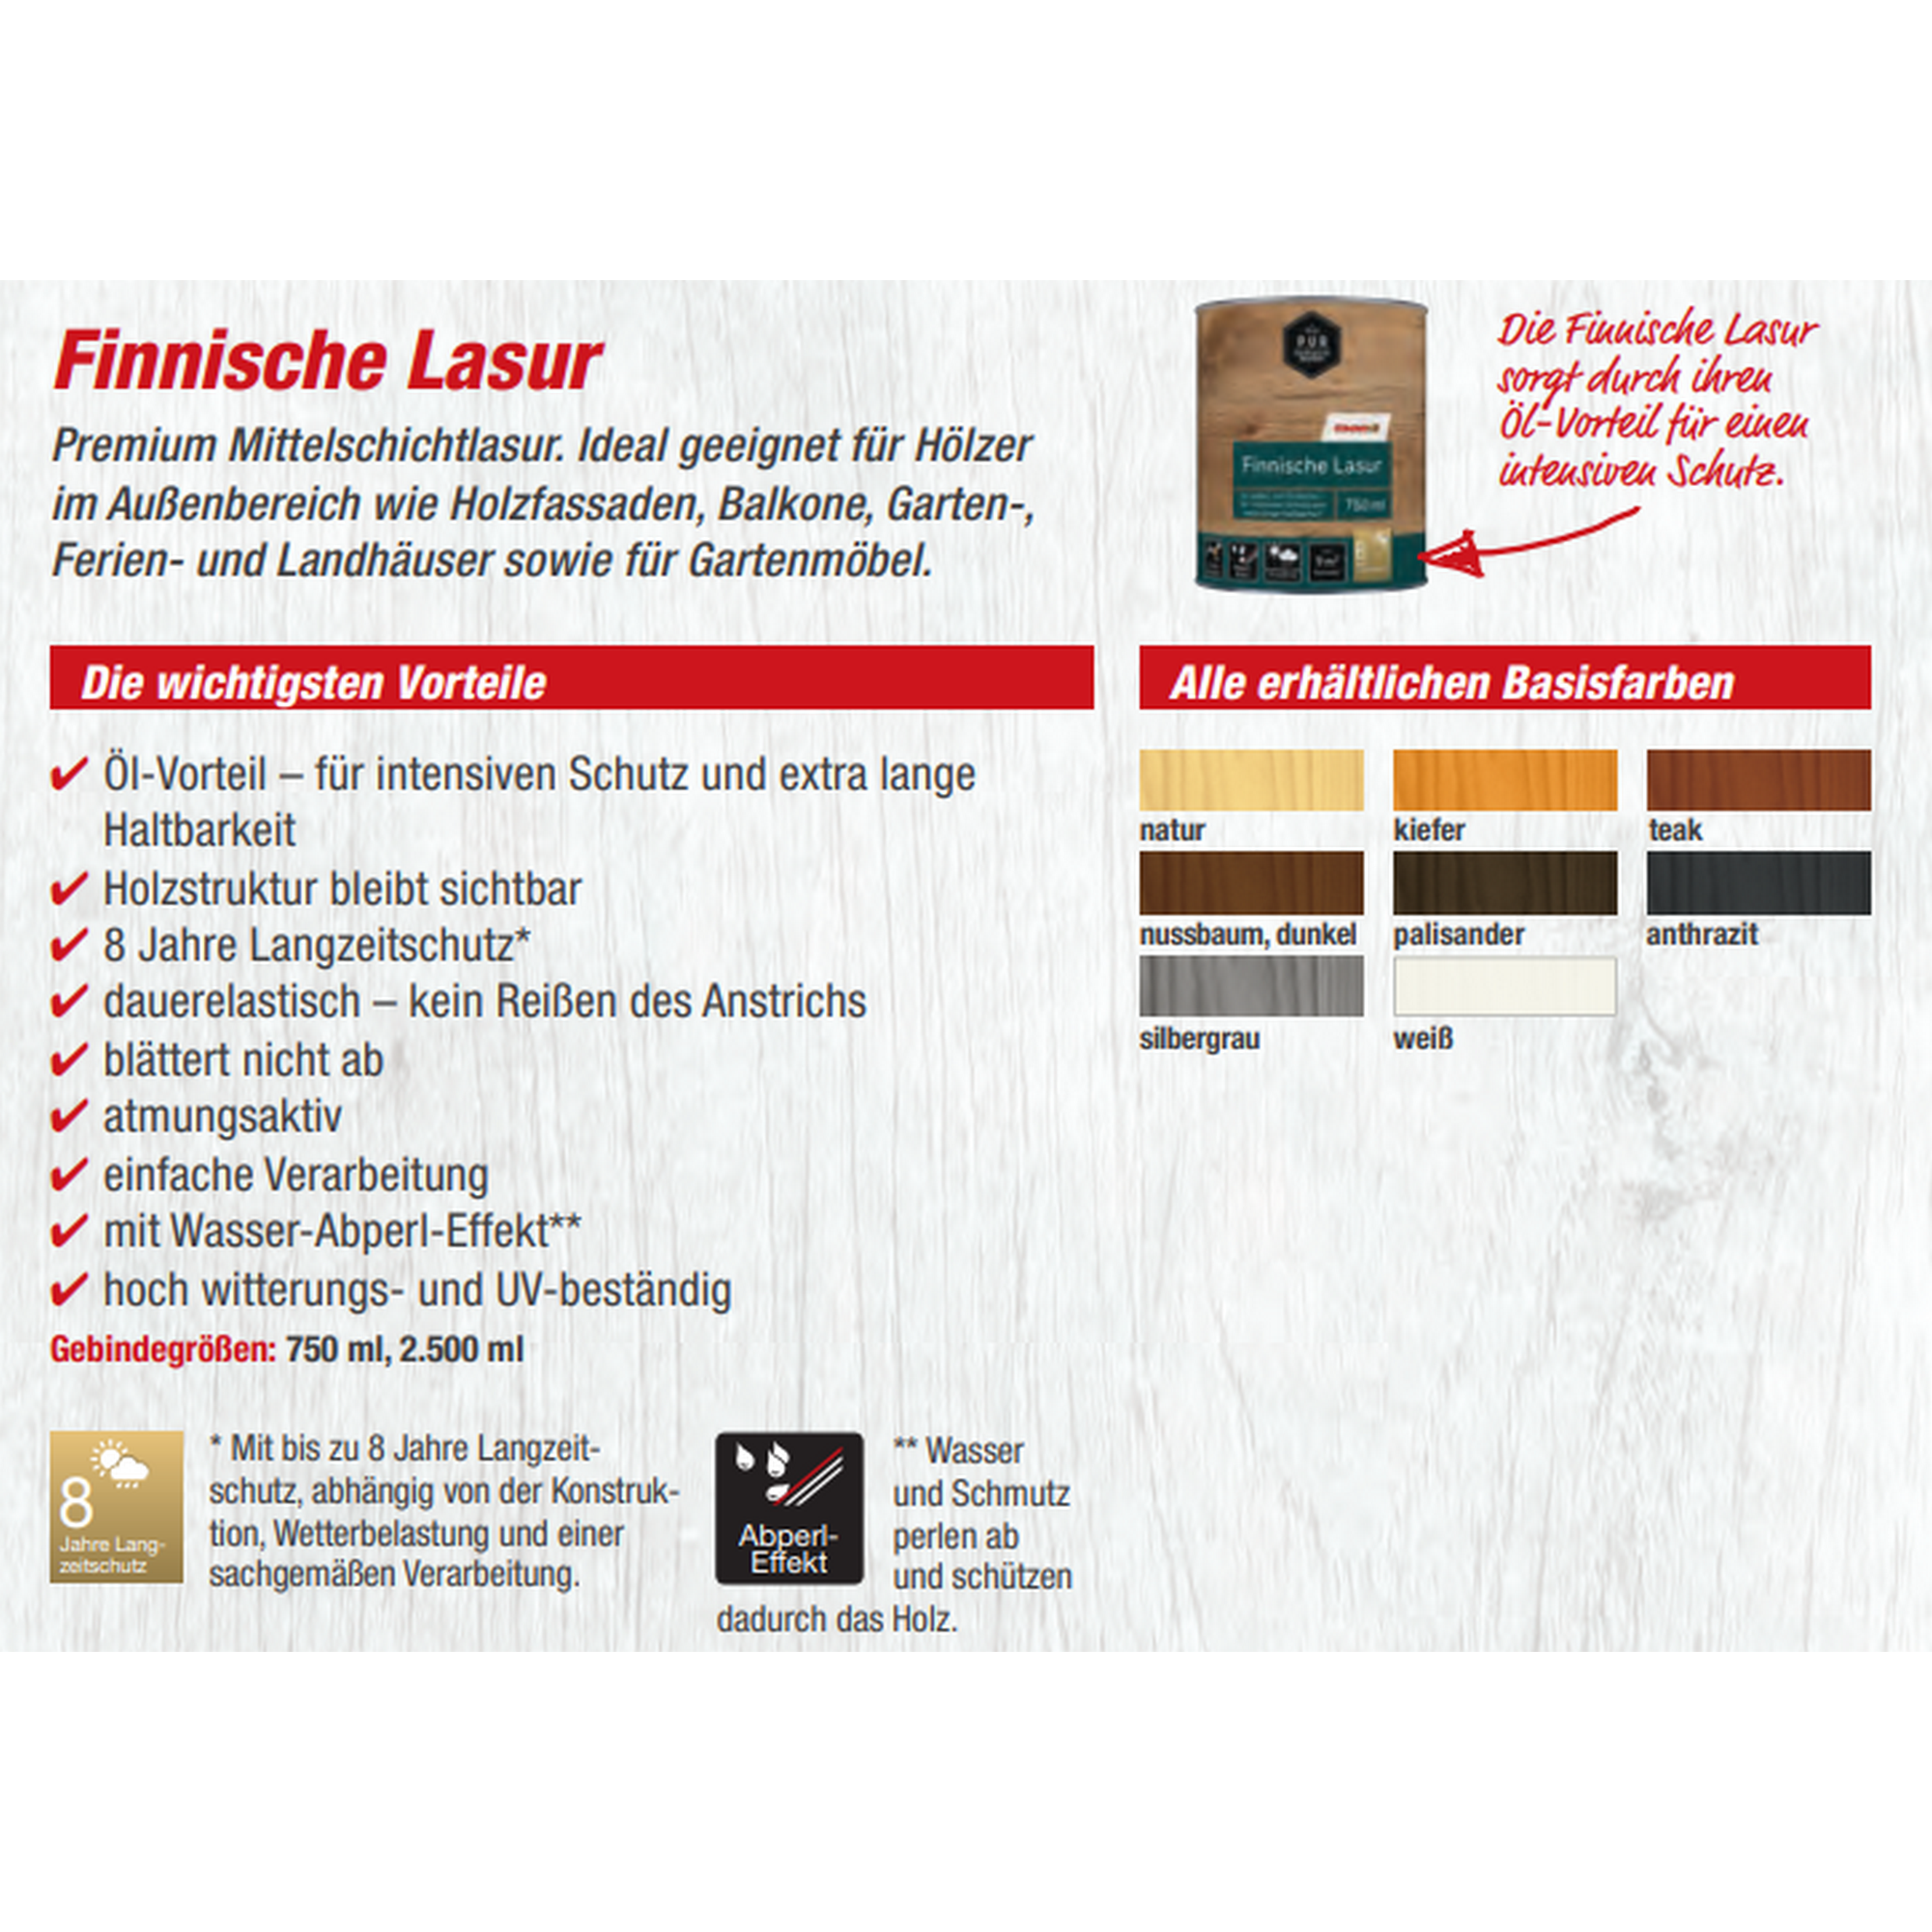 Finnische Lasur dunkelgrau 2,5 l + product picture